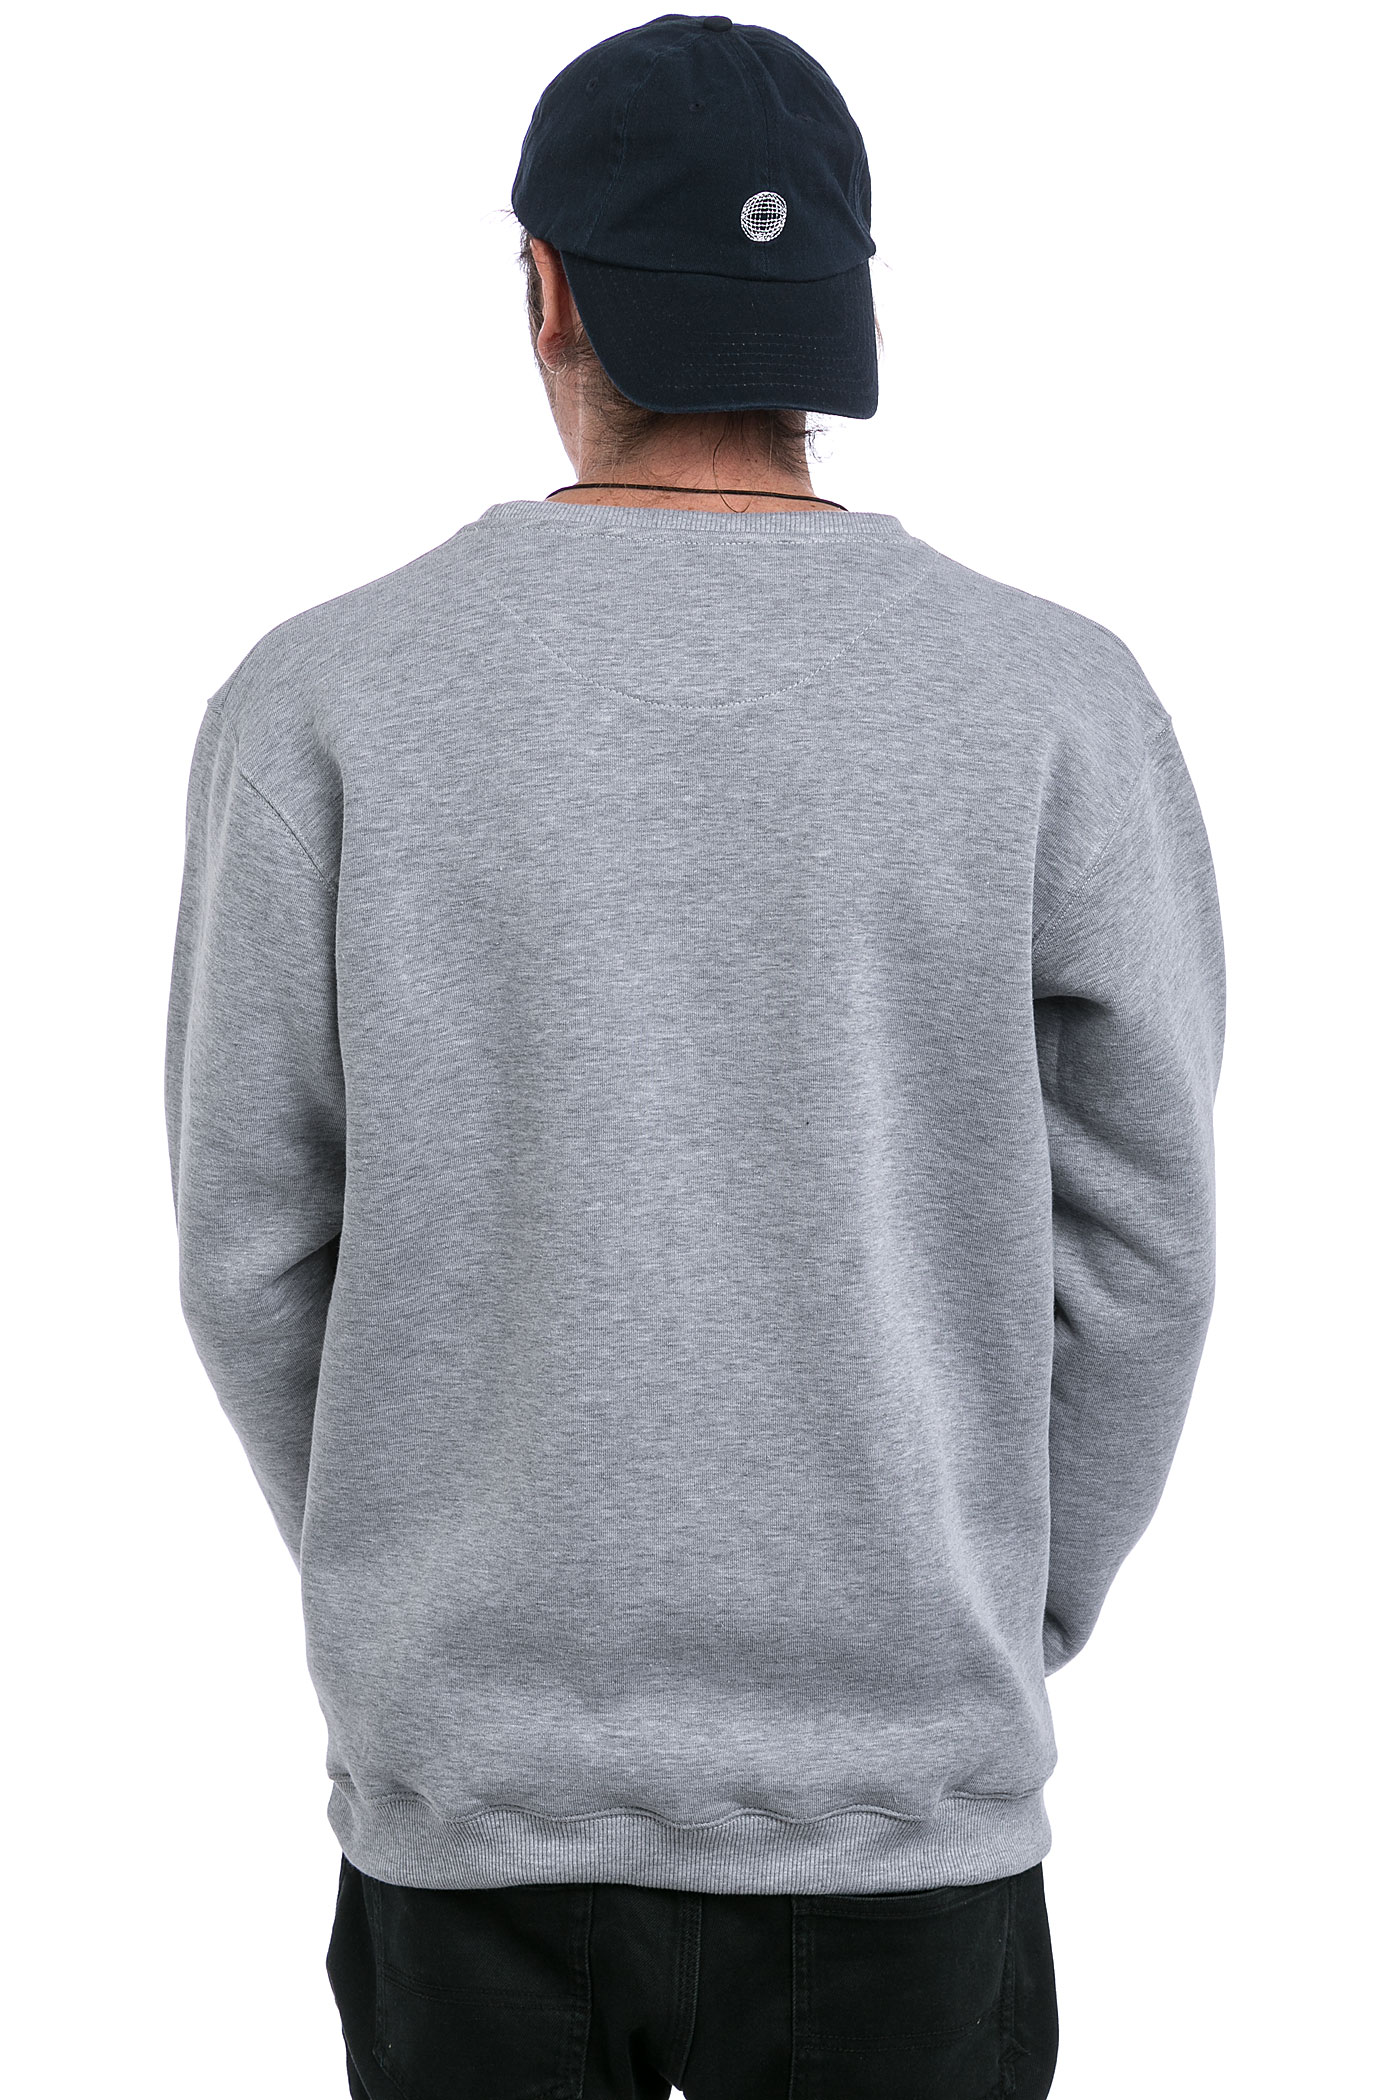 Magenta Crew Brodé Sweatshirt (heather grey) buy at skatedeluxe